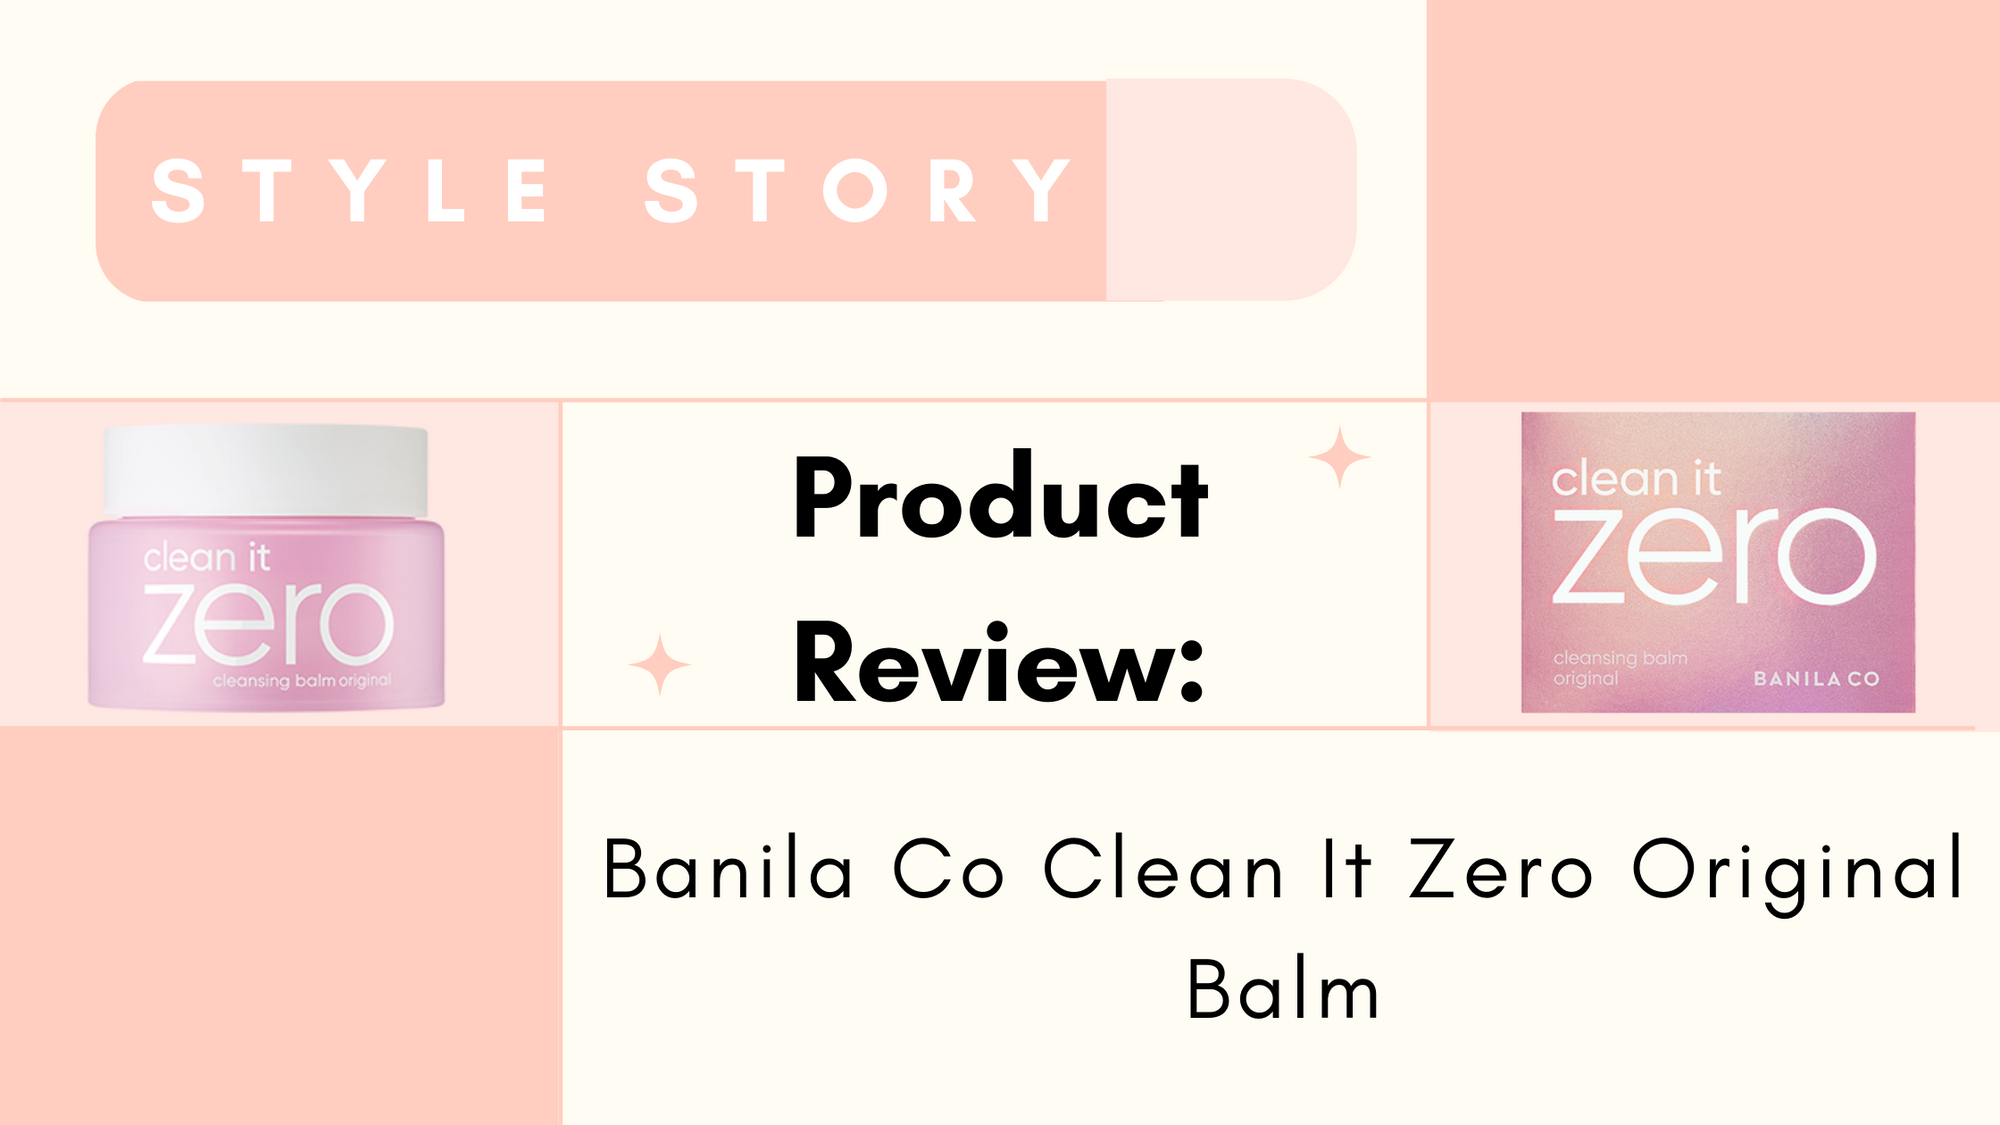 Banila Co Clean It Zero Original Balm Review - STYLE STORY